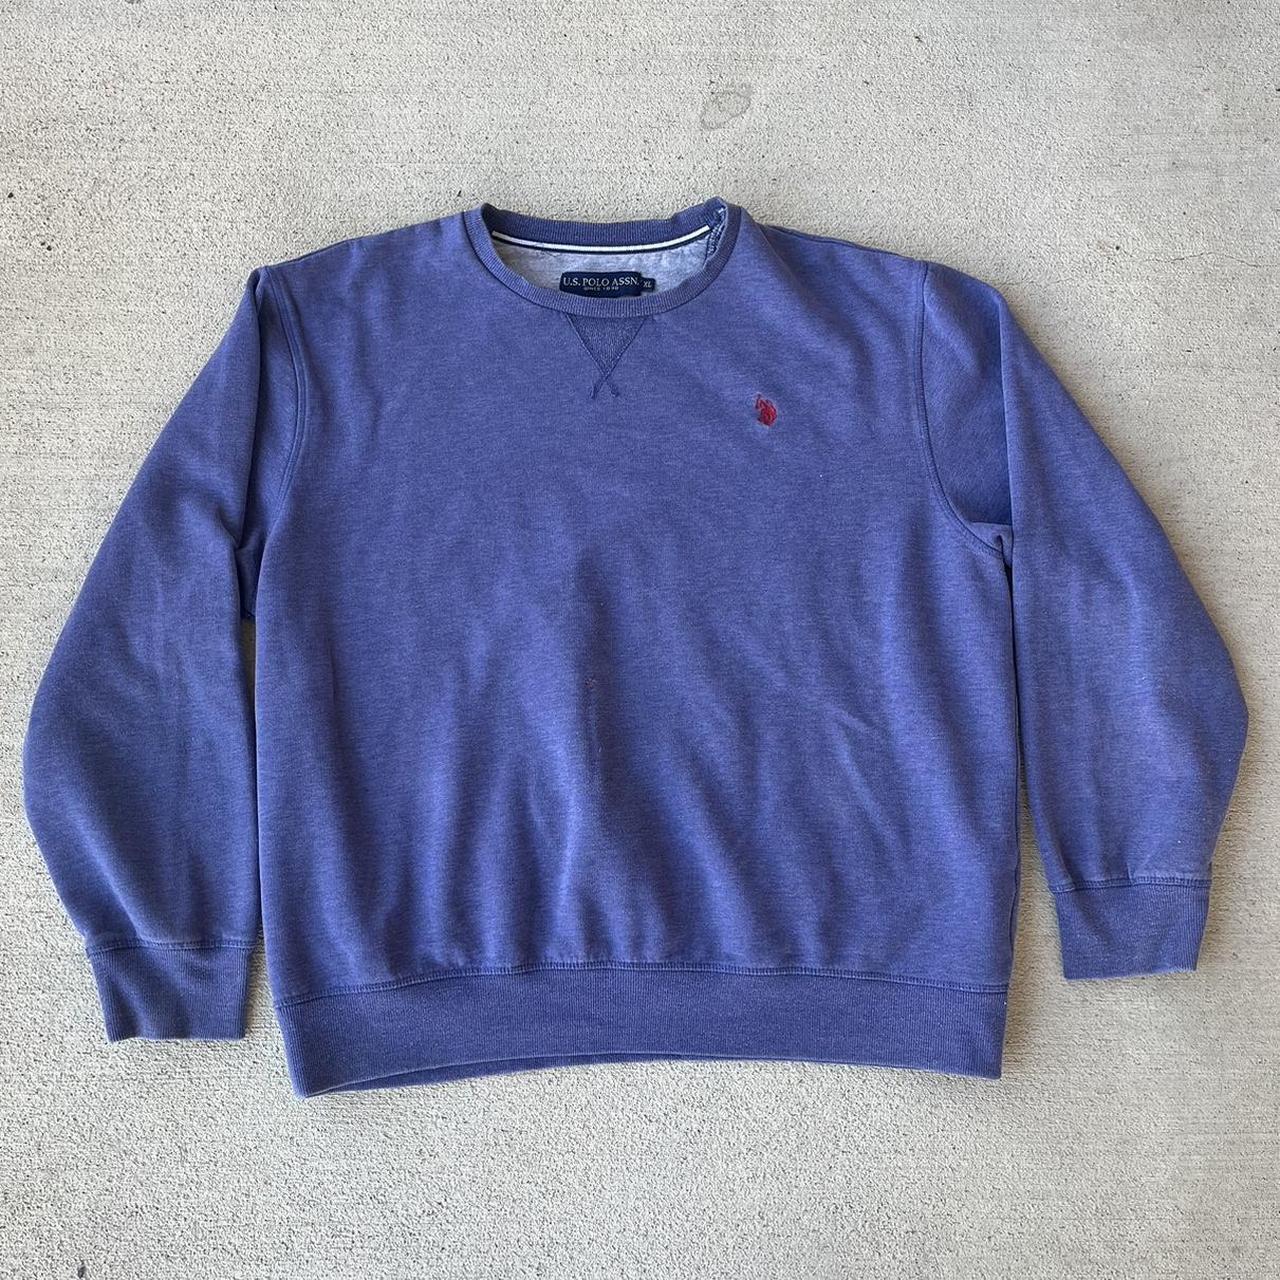 U.S. Polo Assn. Men's Purple Sweatshirt